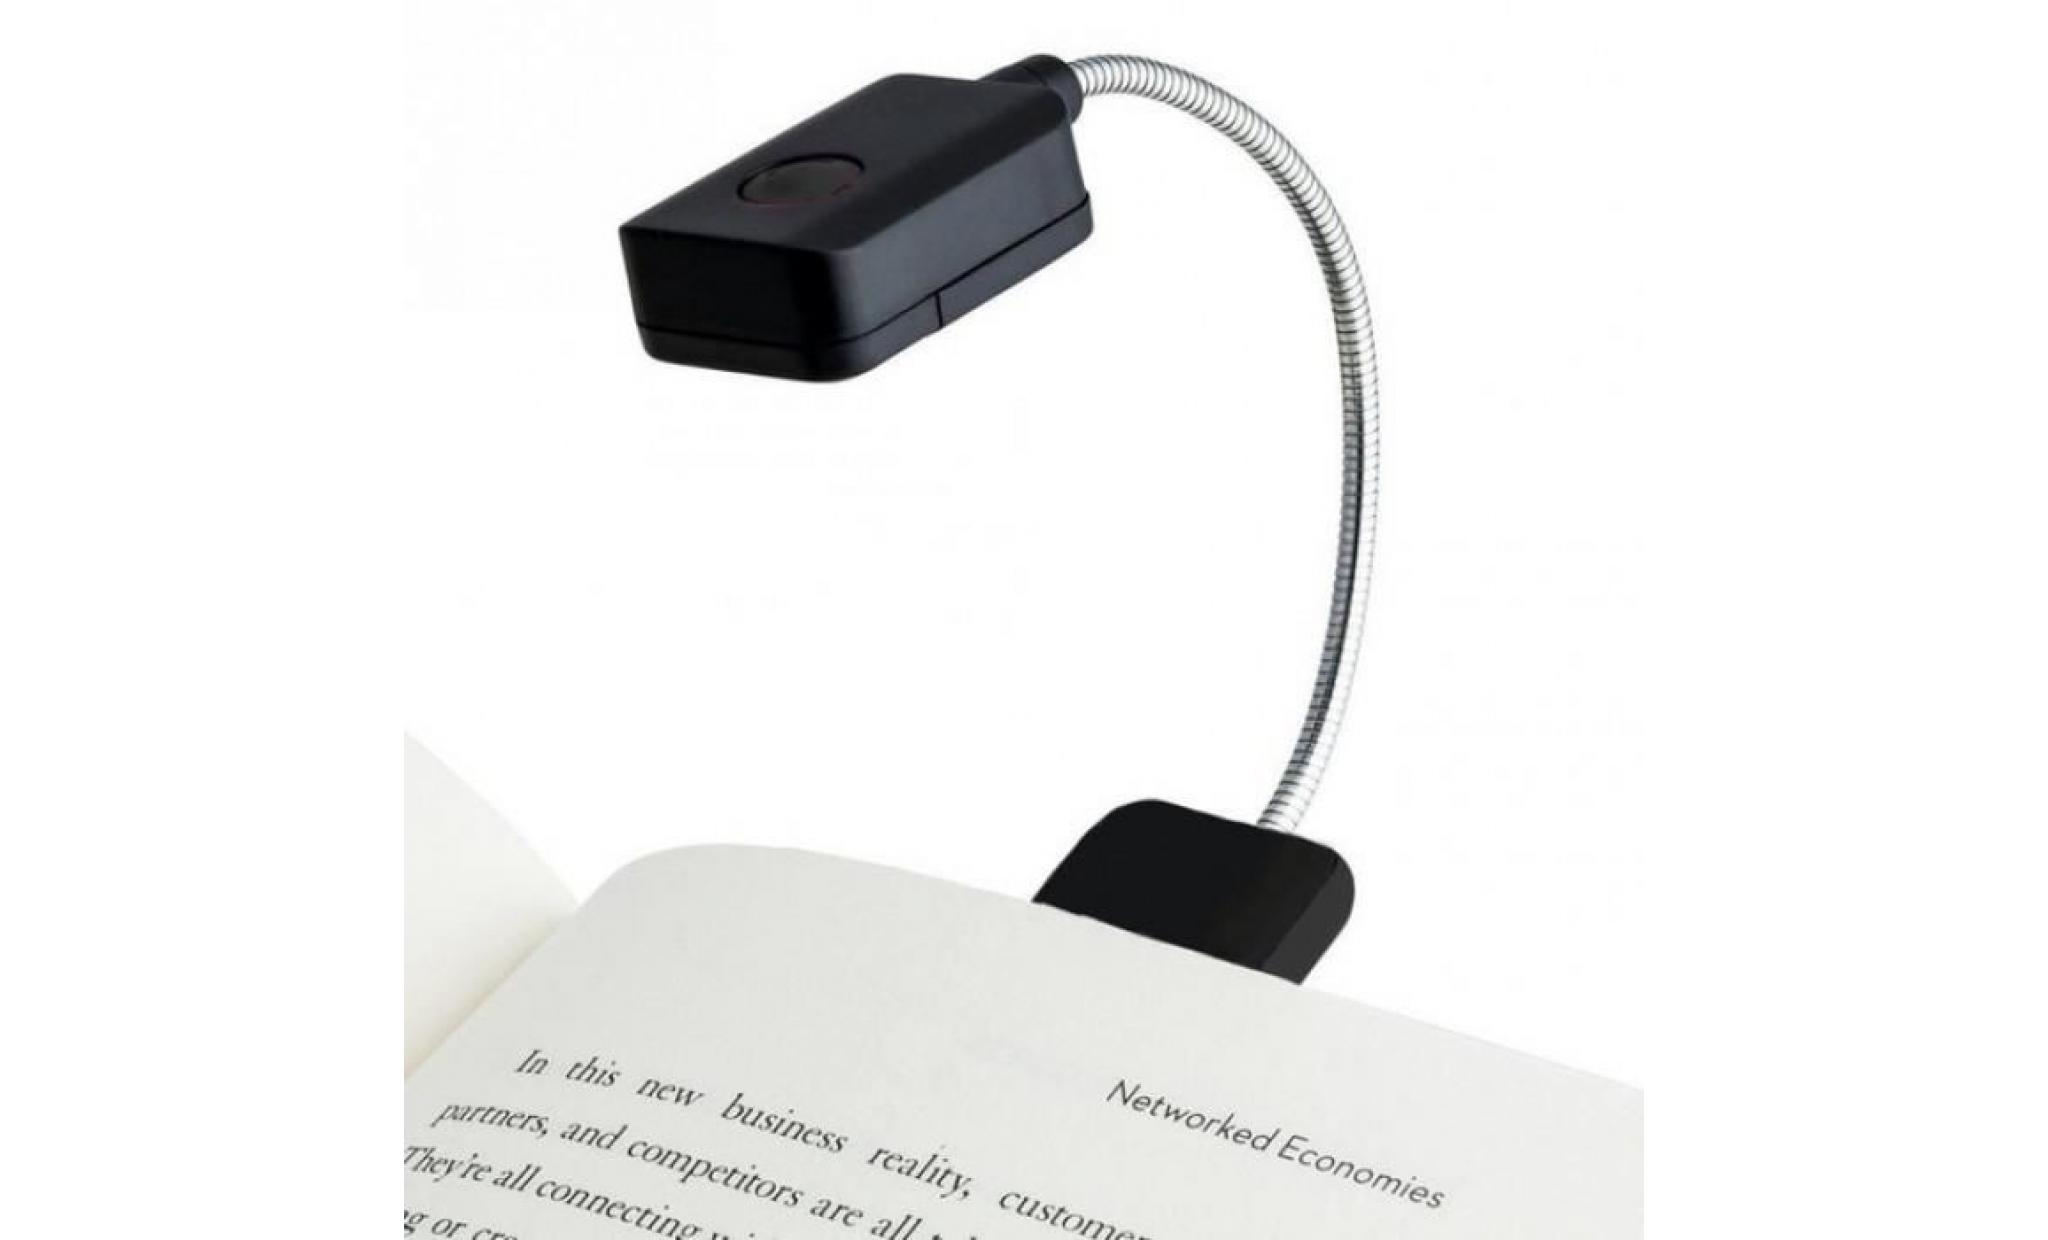 portable table lampe pour kindle ordinateur led livre lumière light reading de bureau mini flexible clip sur #105  #24 #71